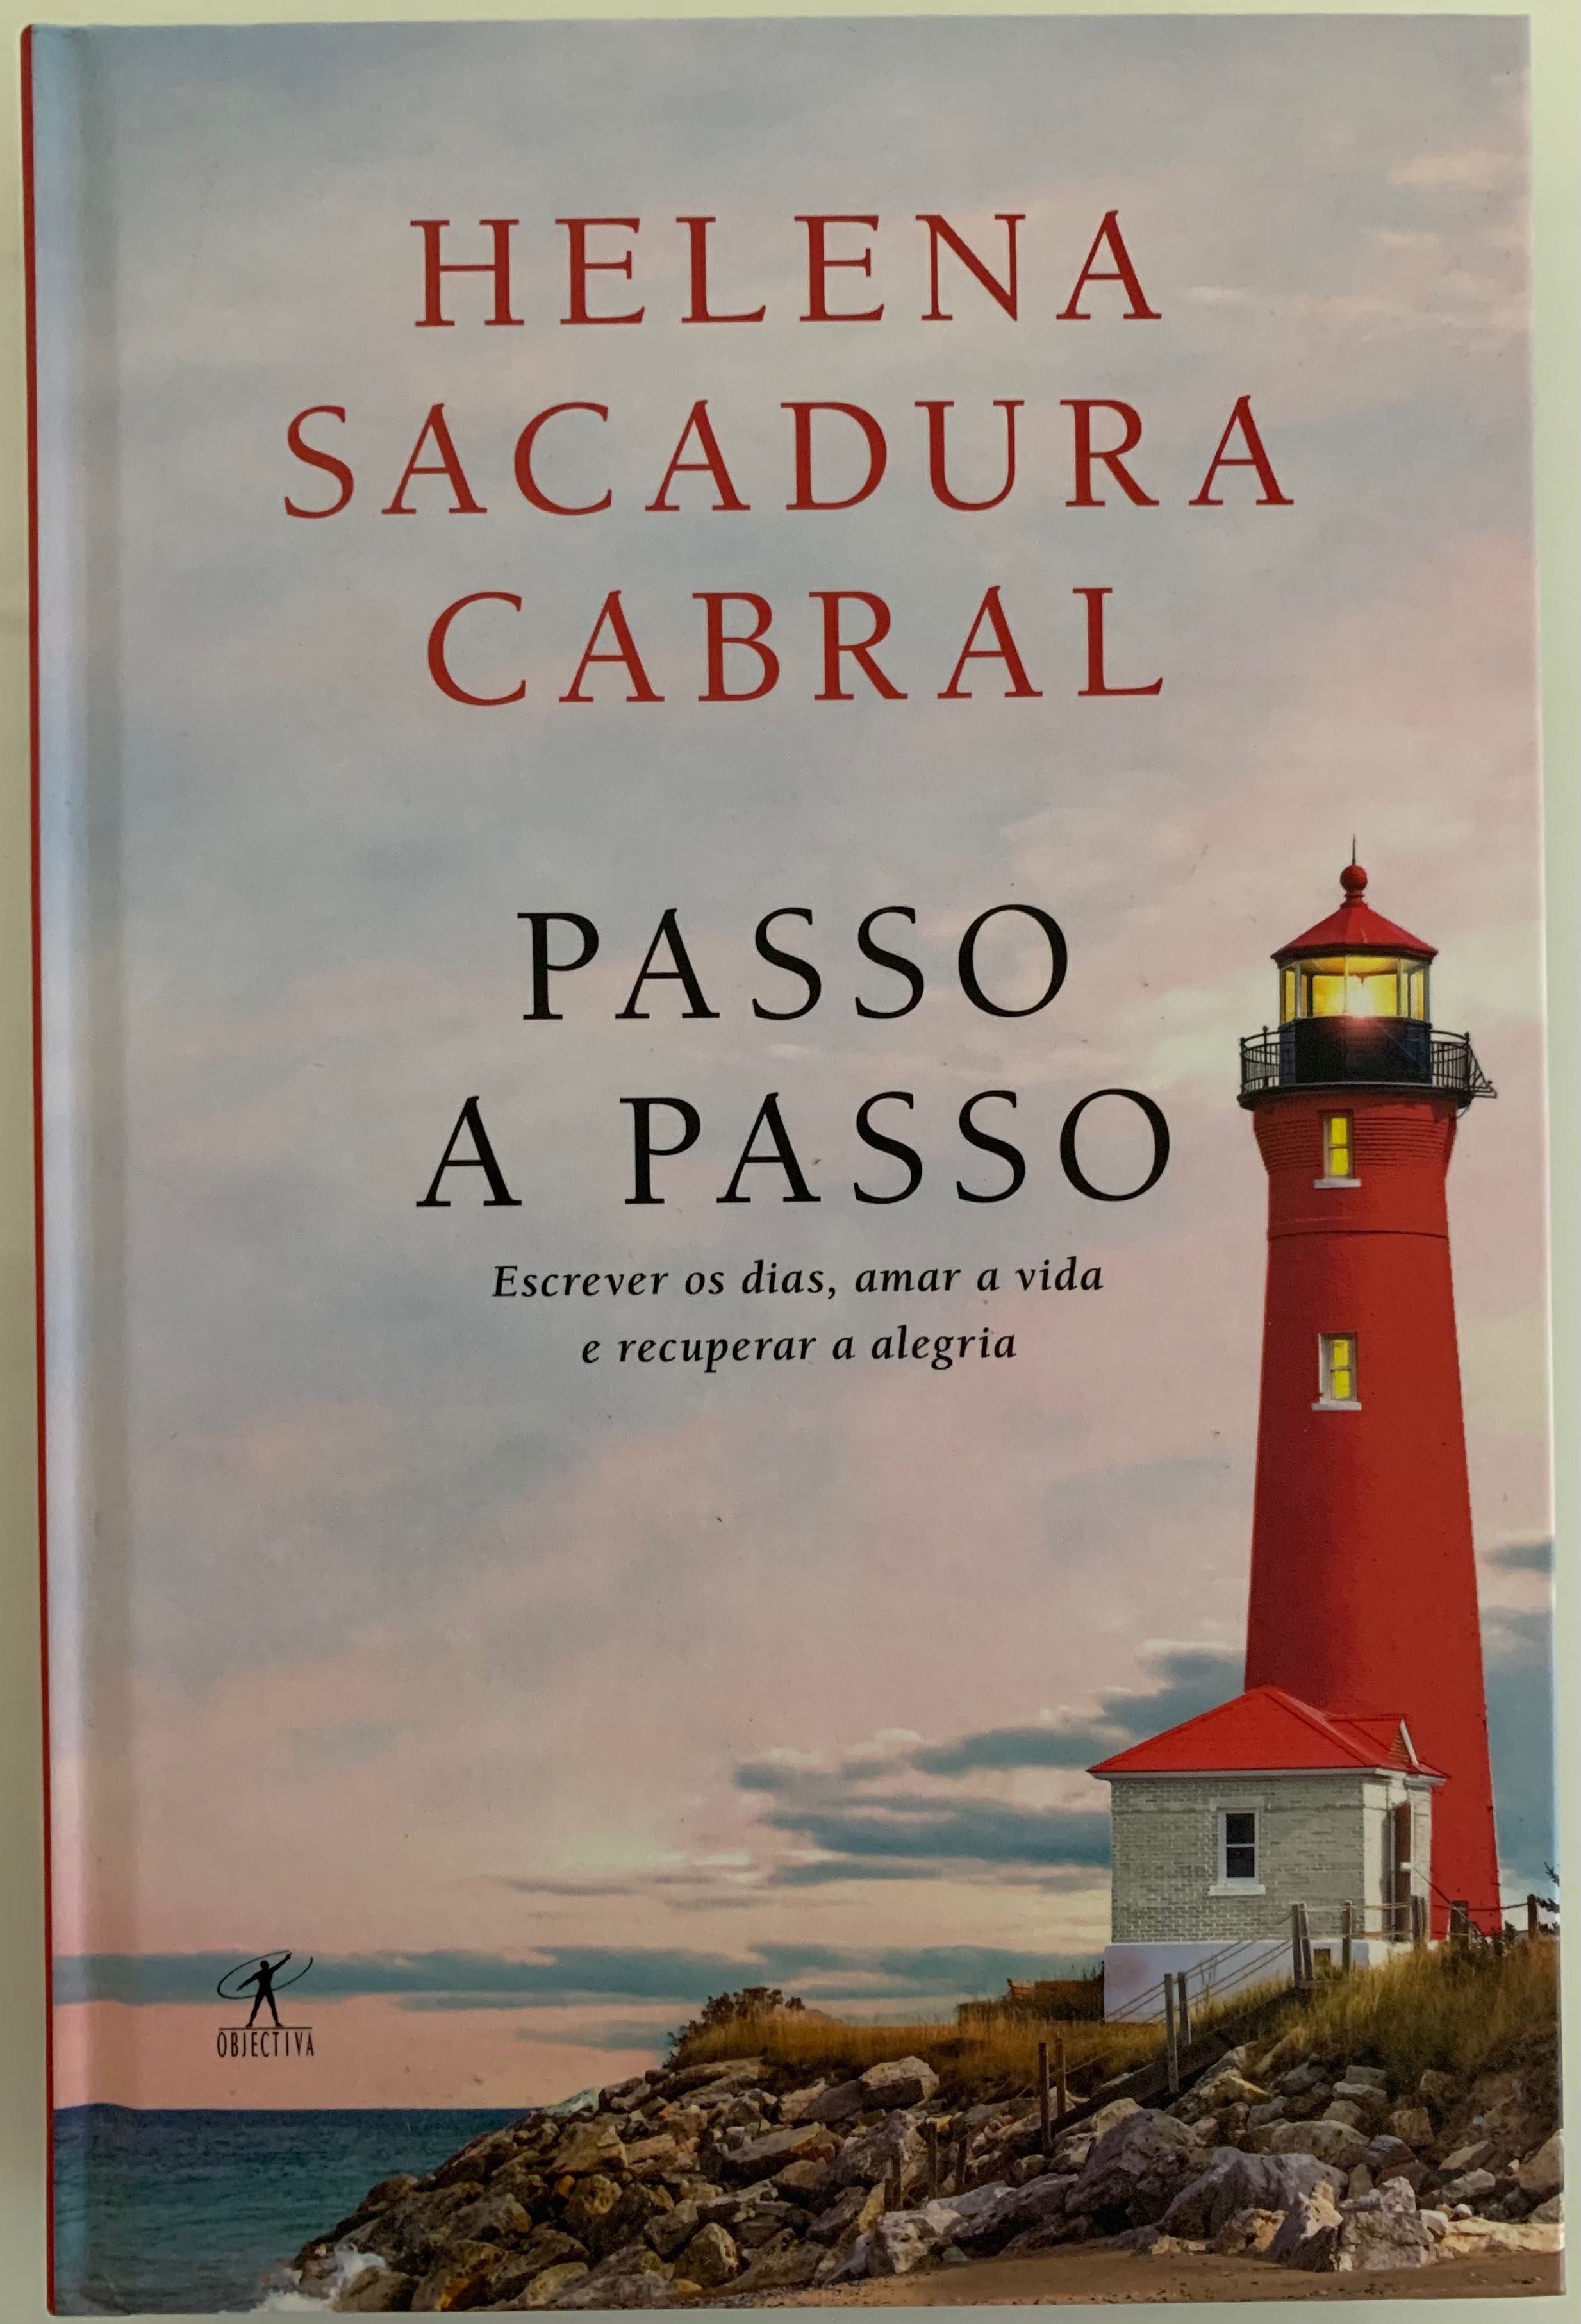 Livro “Passo a Passo” - Helena Sacadura Cabral